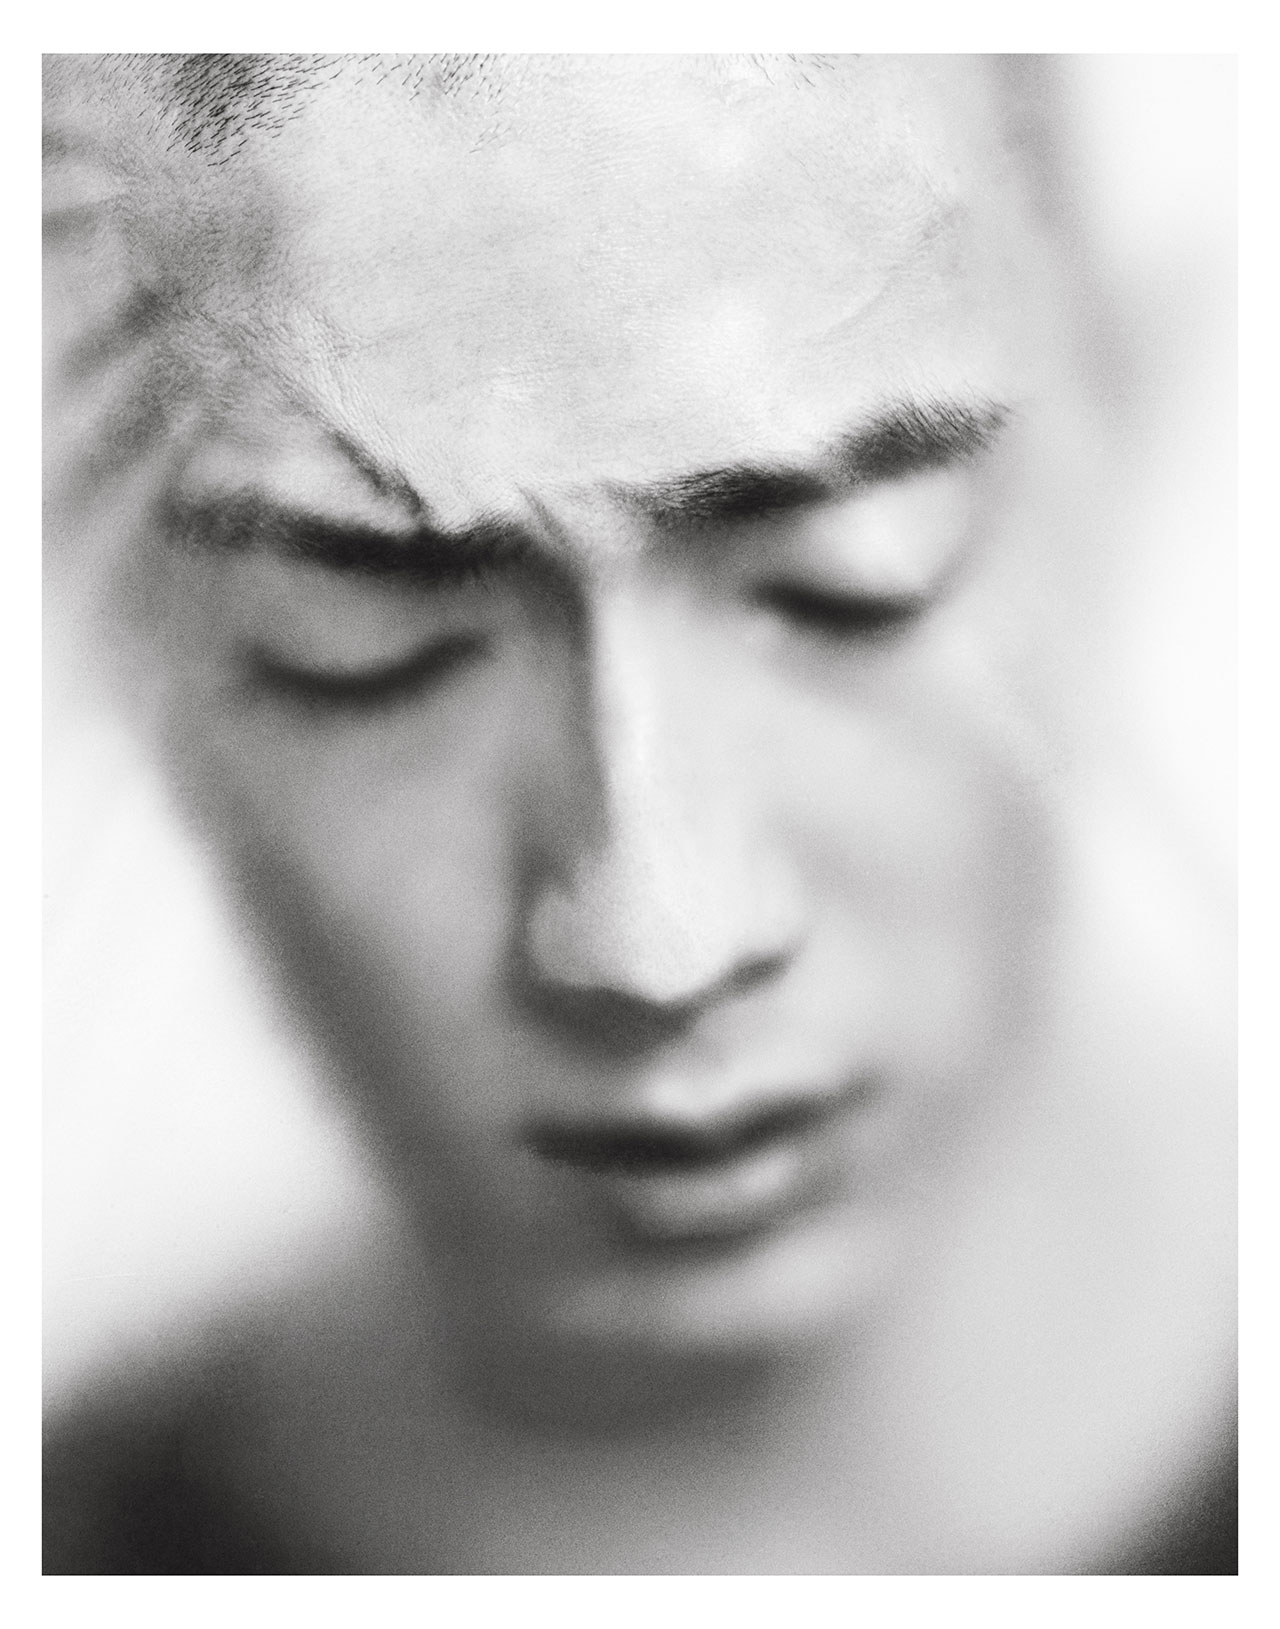 Sung Jin Park by Hong Jang Hyun for Models.com